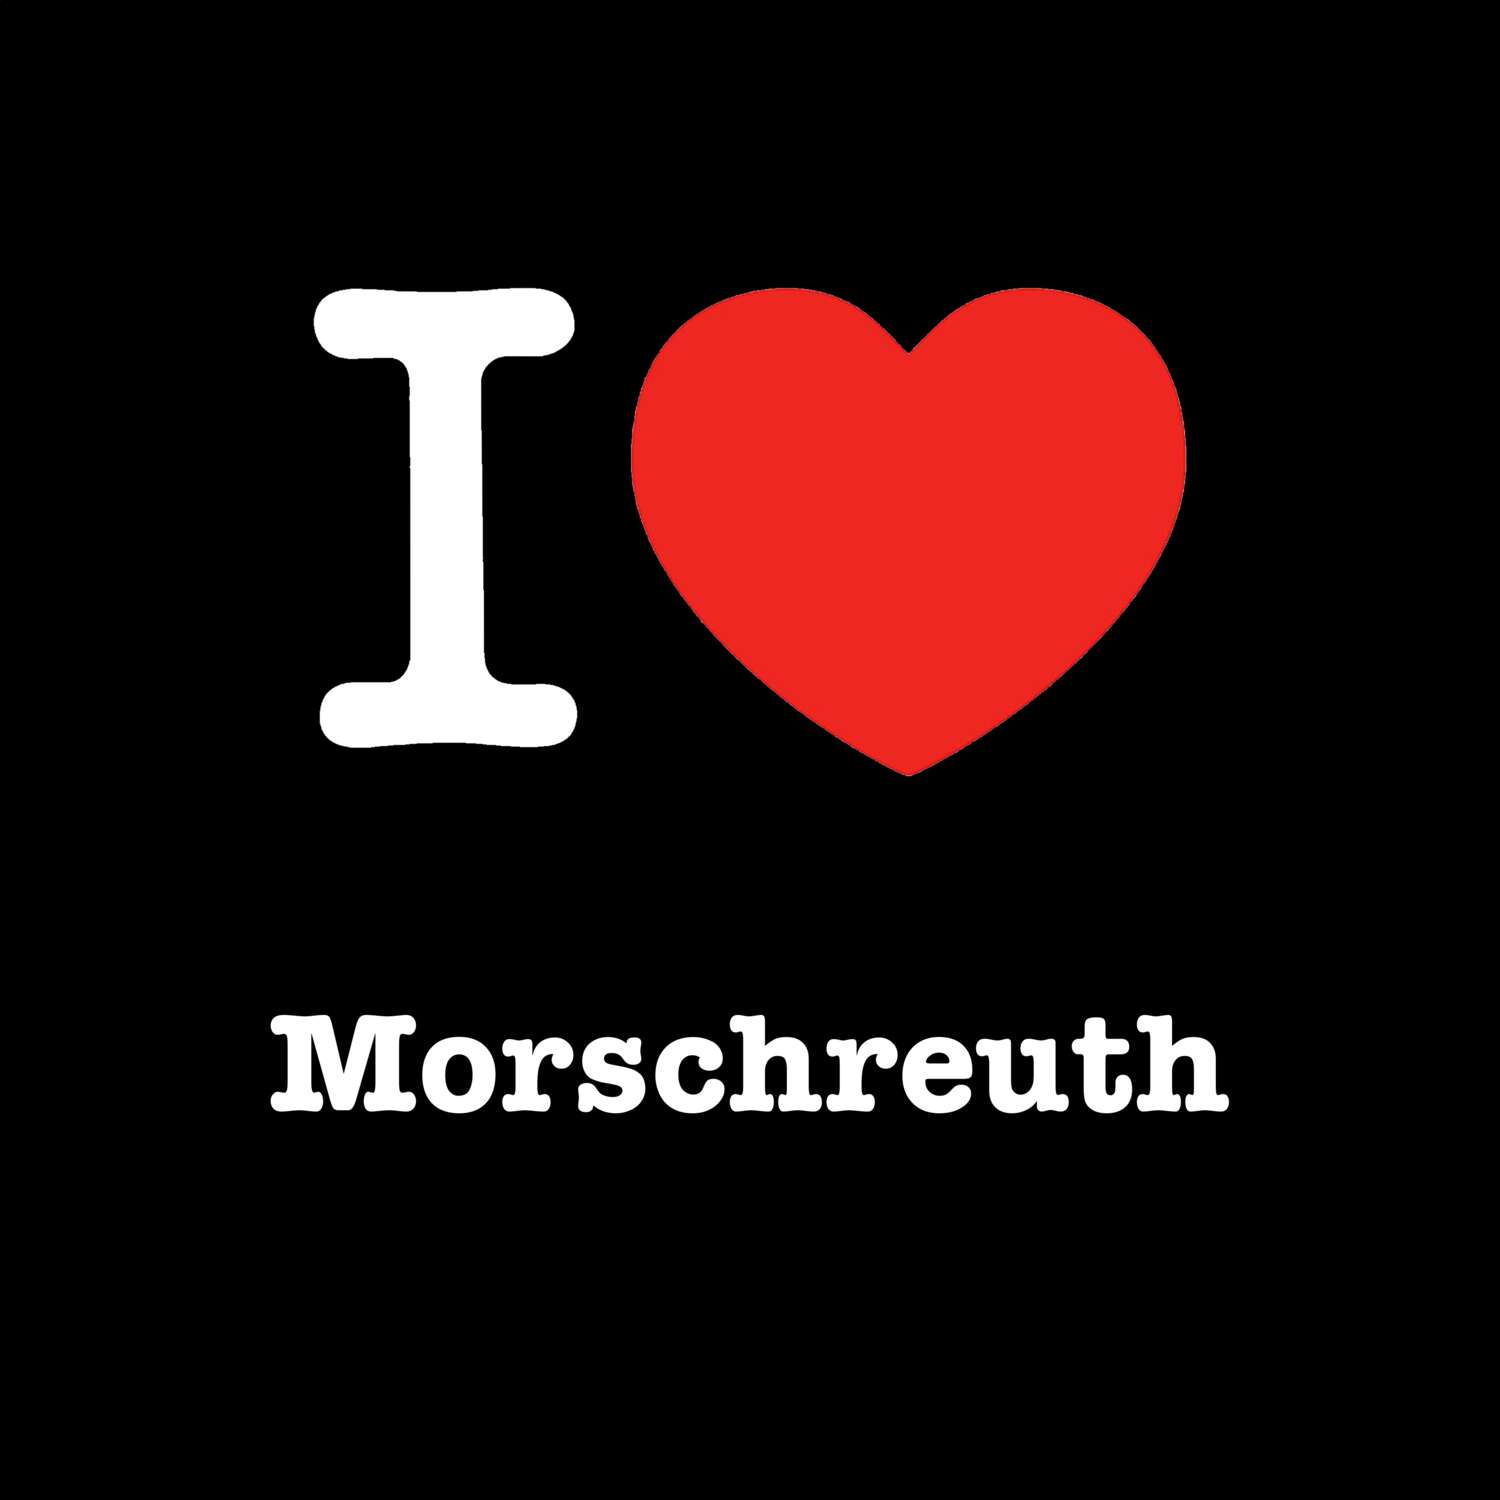 Morschreuth T-Shirt »I love«